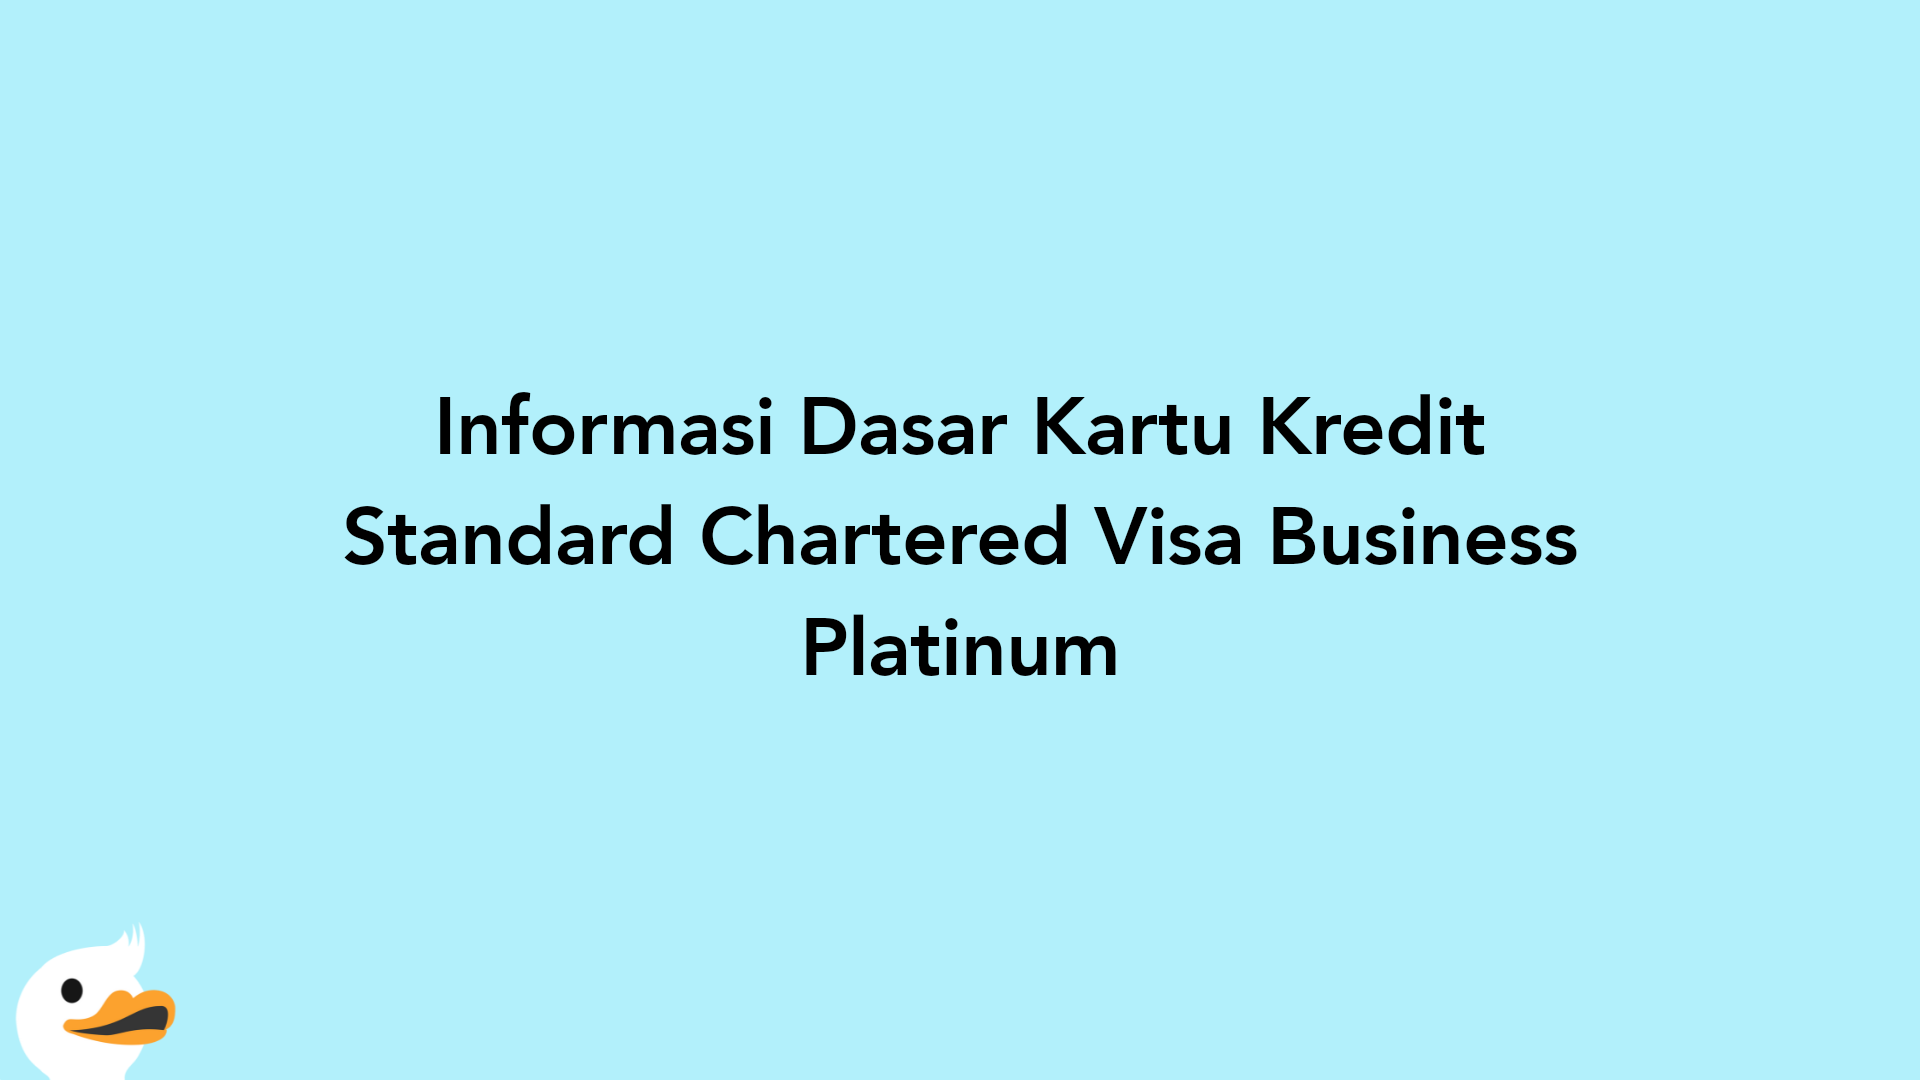 Informasi Dasar Kartu Kredit Standard Chartered Visa Business Platinum